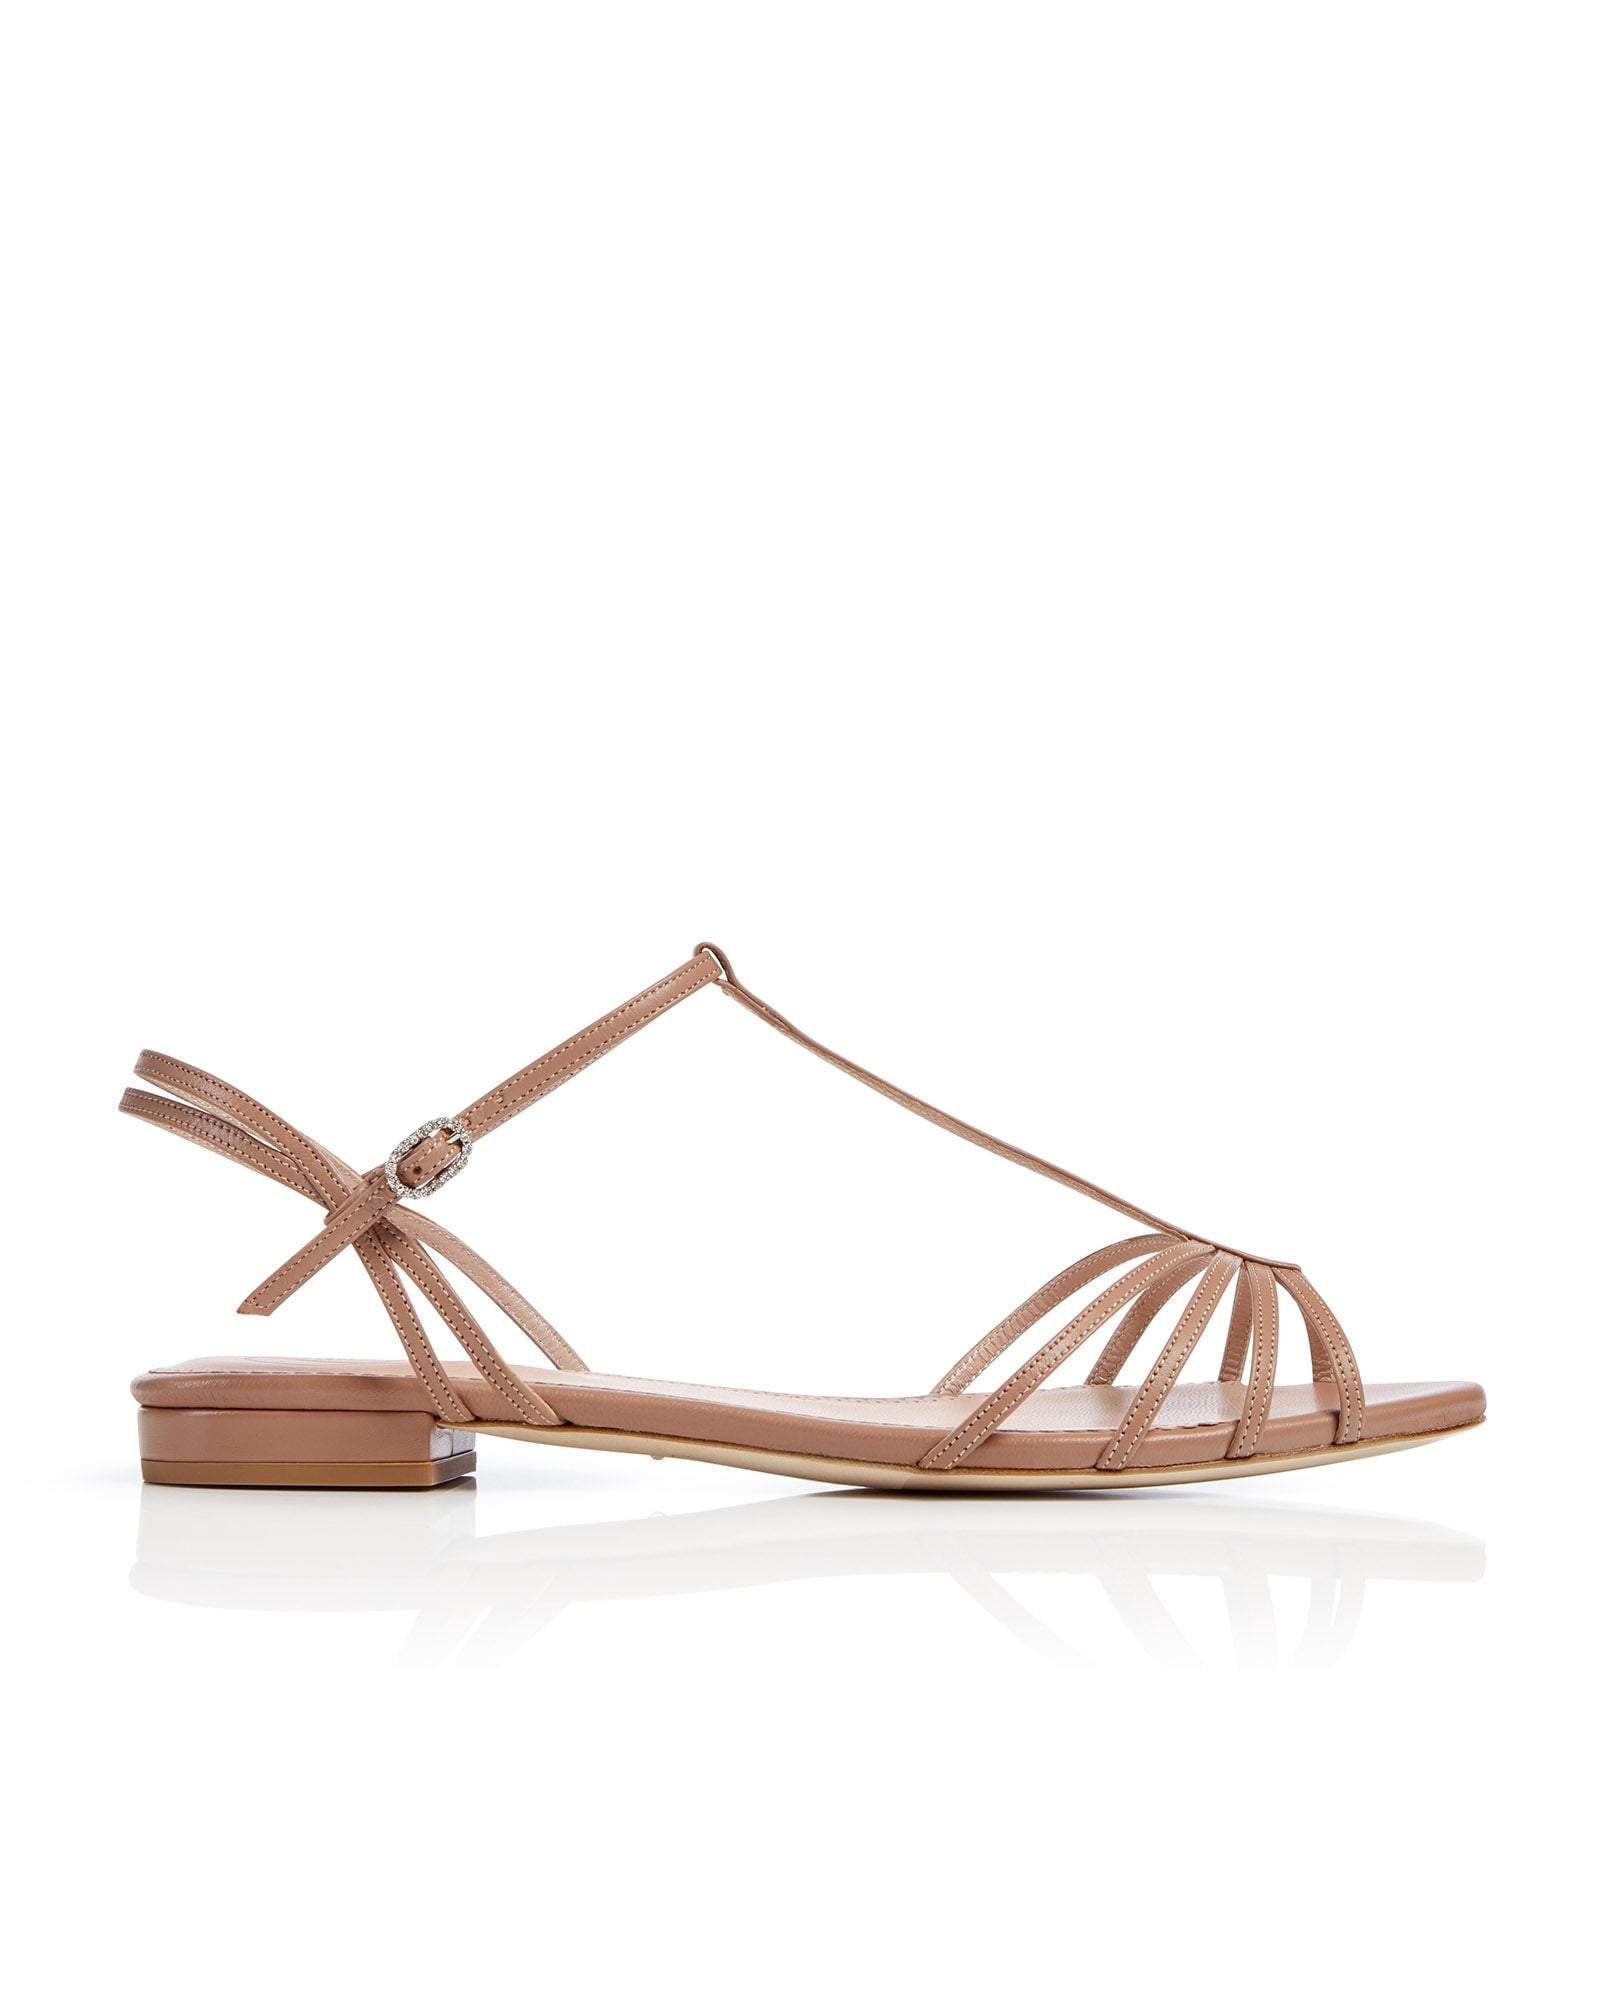 May Tan Fashion Shoe Light Brown Suede Flat Sandal  image